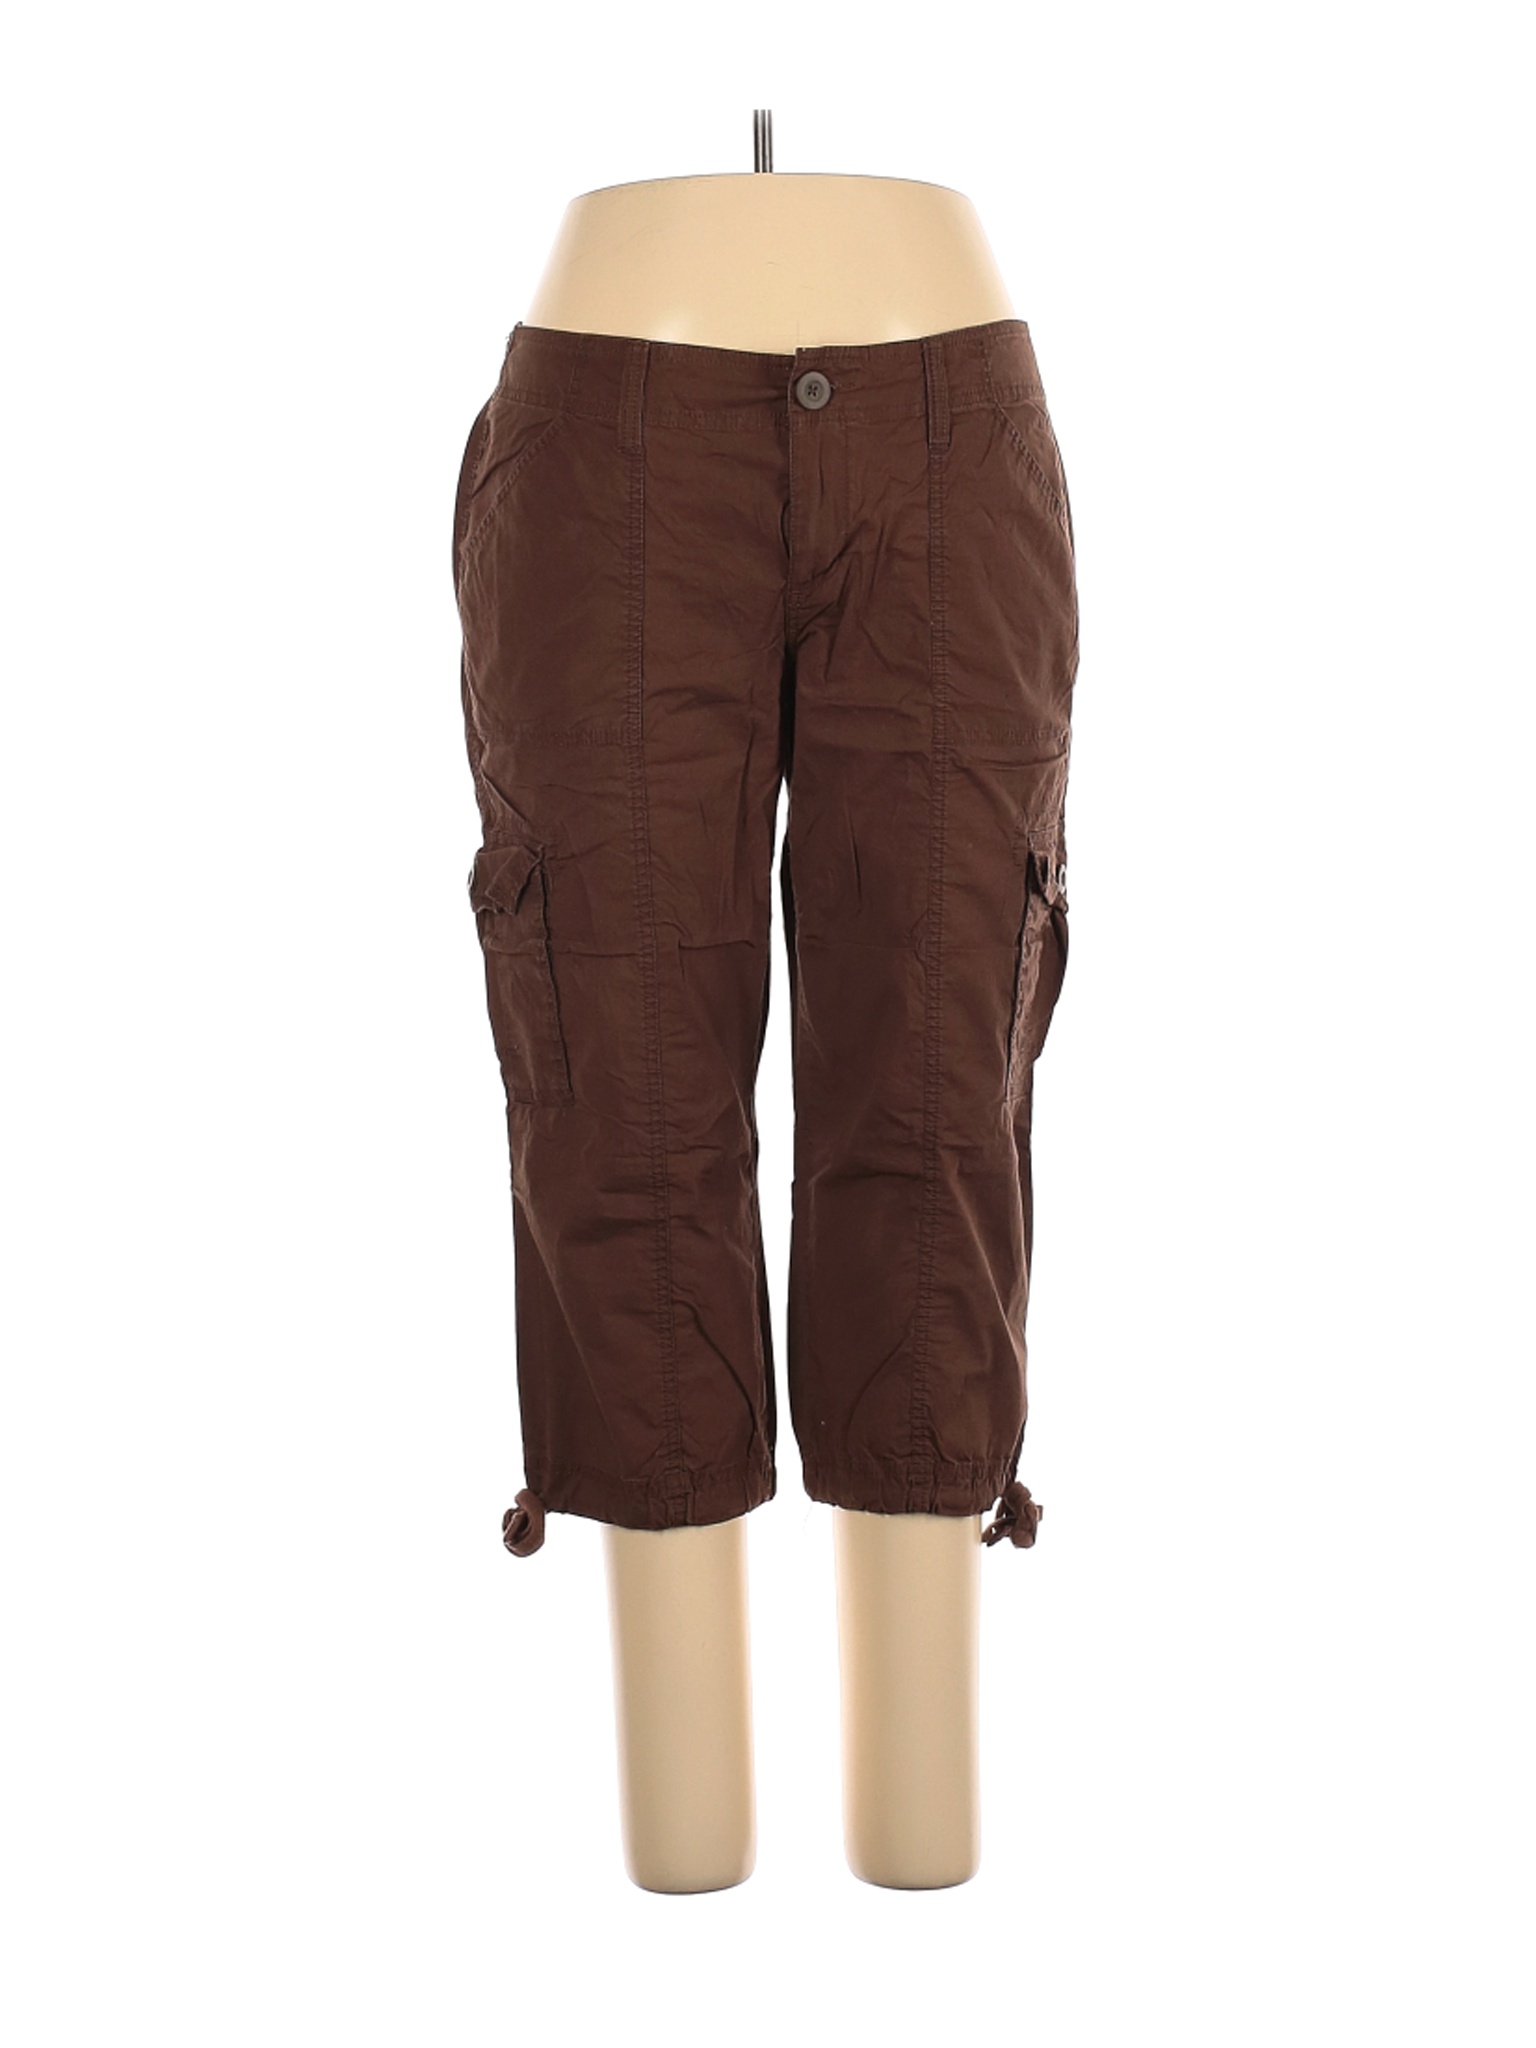 Old Navy Women Brown Cargo Pants 14 | eBay